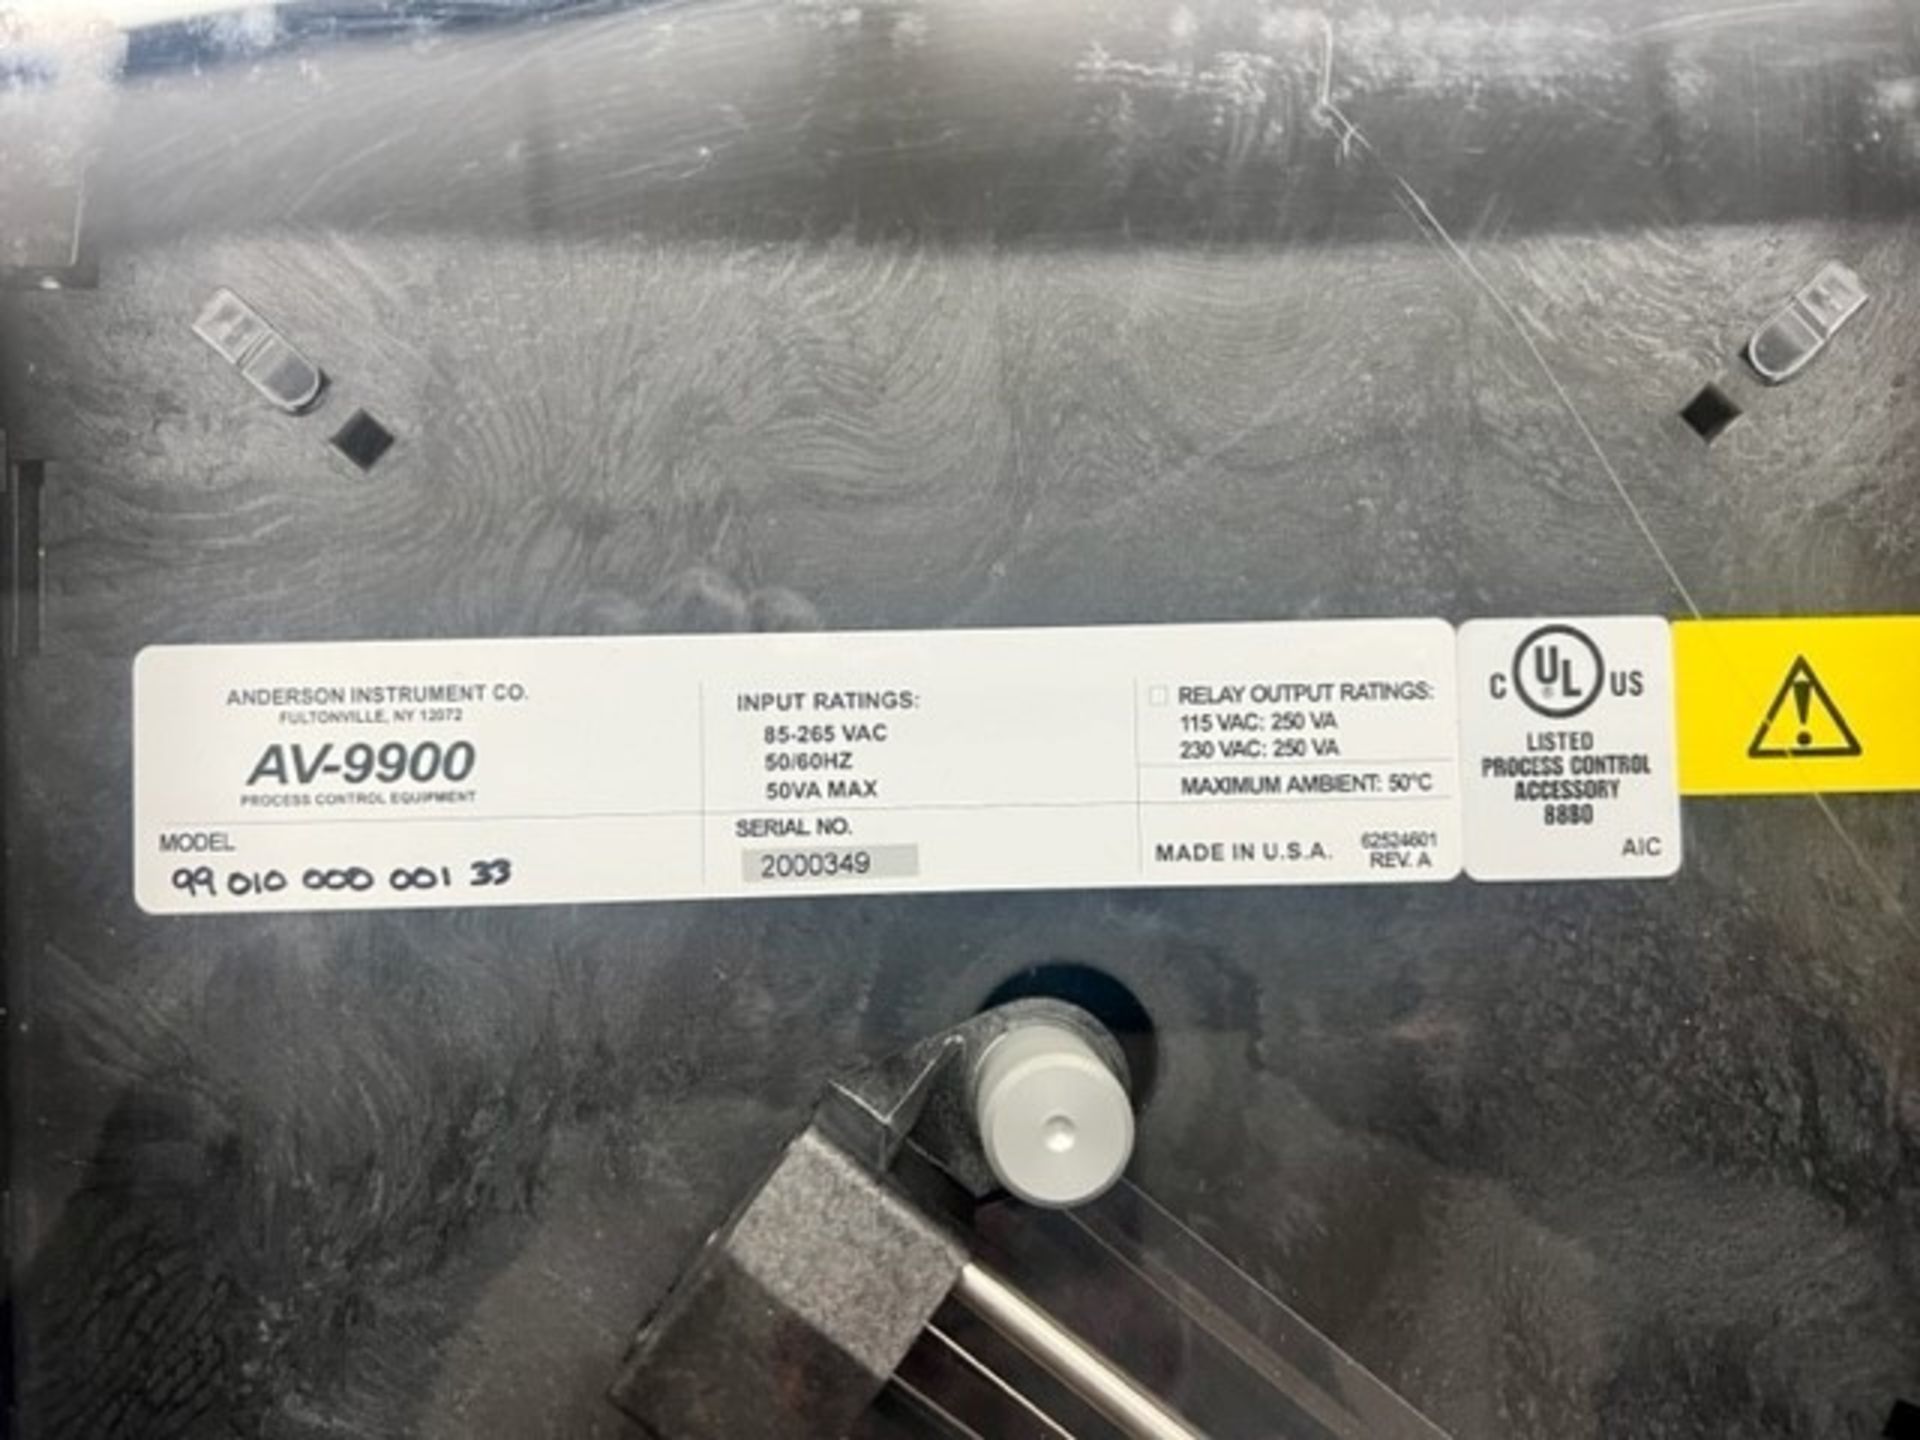 Anderson-Negele AV-9900 Chart Recorder, Model 99010-000-001-33, S/N 2000349 (Load Fee $50) ( - Image 2 of 4